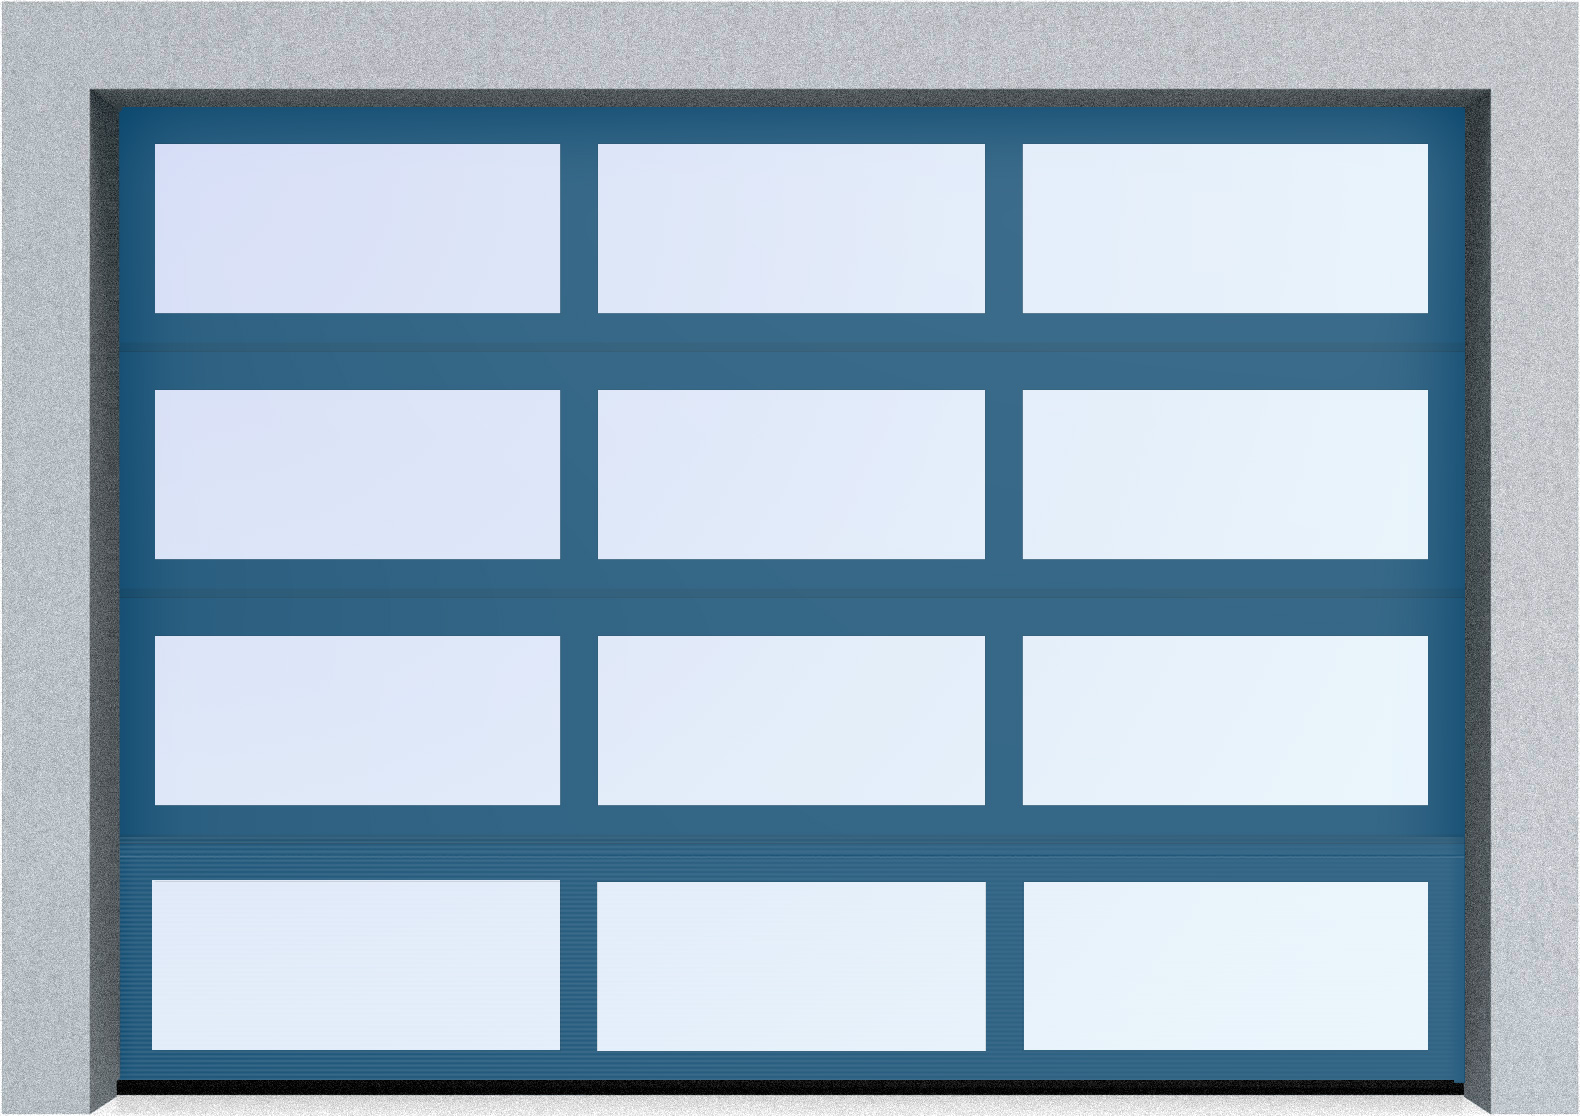  Секционные панорамные ворота серии AluTrend (АЛП) 2125х2250 нижняя панель стандартные цвета, фото 3 